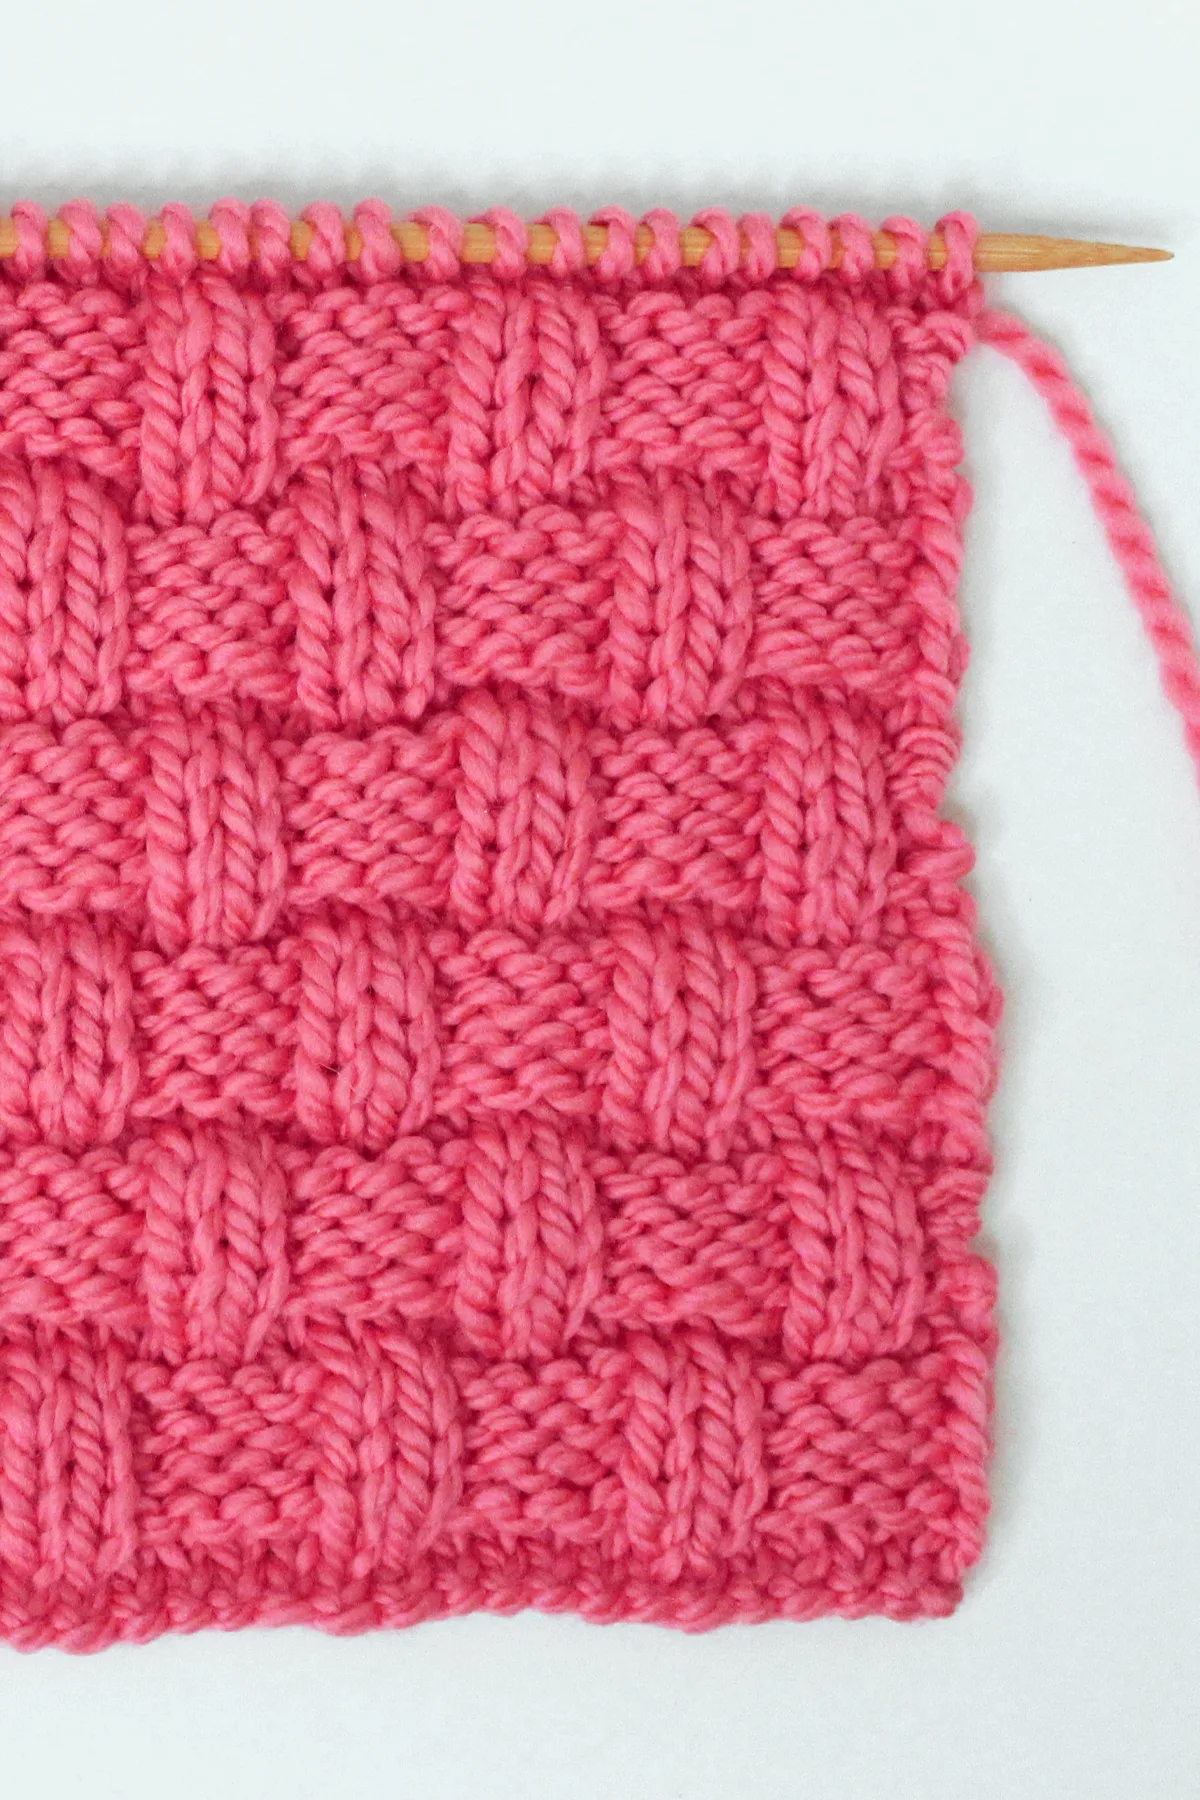 BASKET Stitch Pattern - Oh La Lana! knitting blog